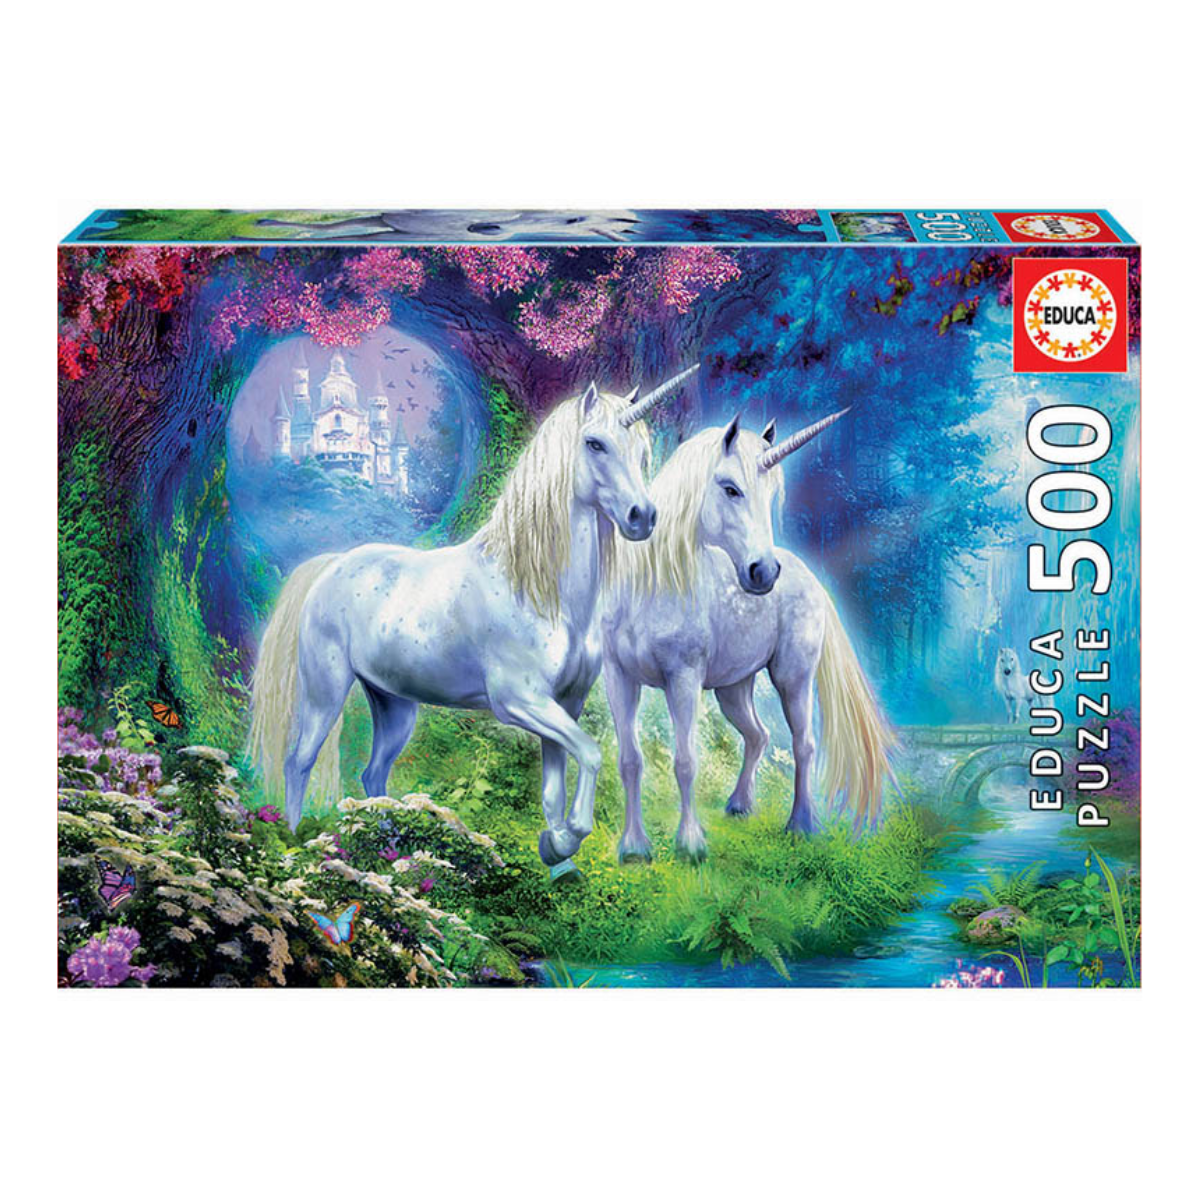 Puzzle 500 Unicornios en el Bosque